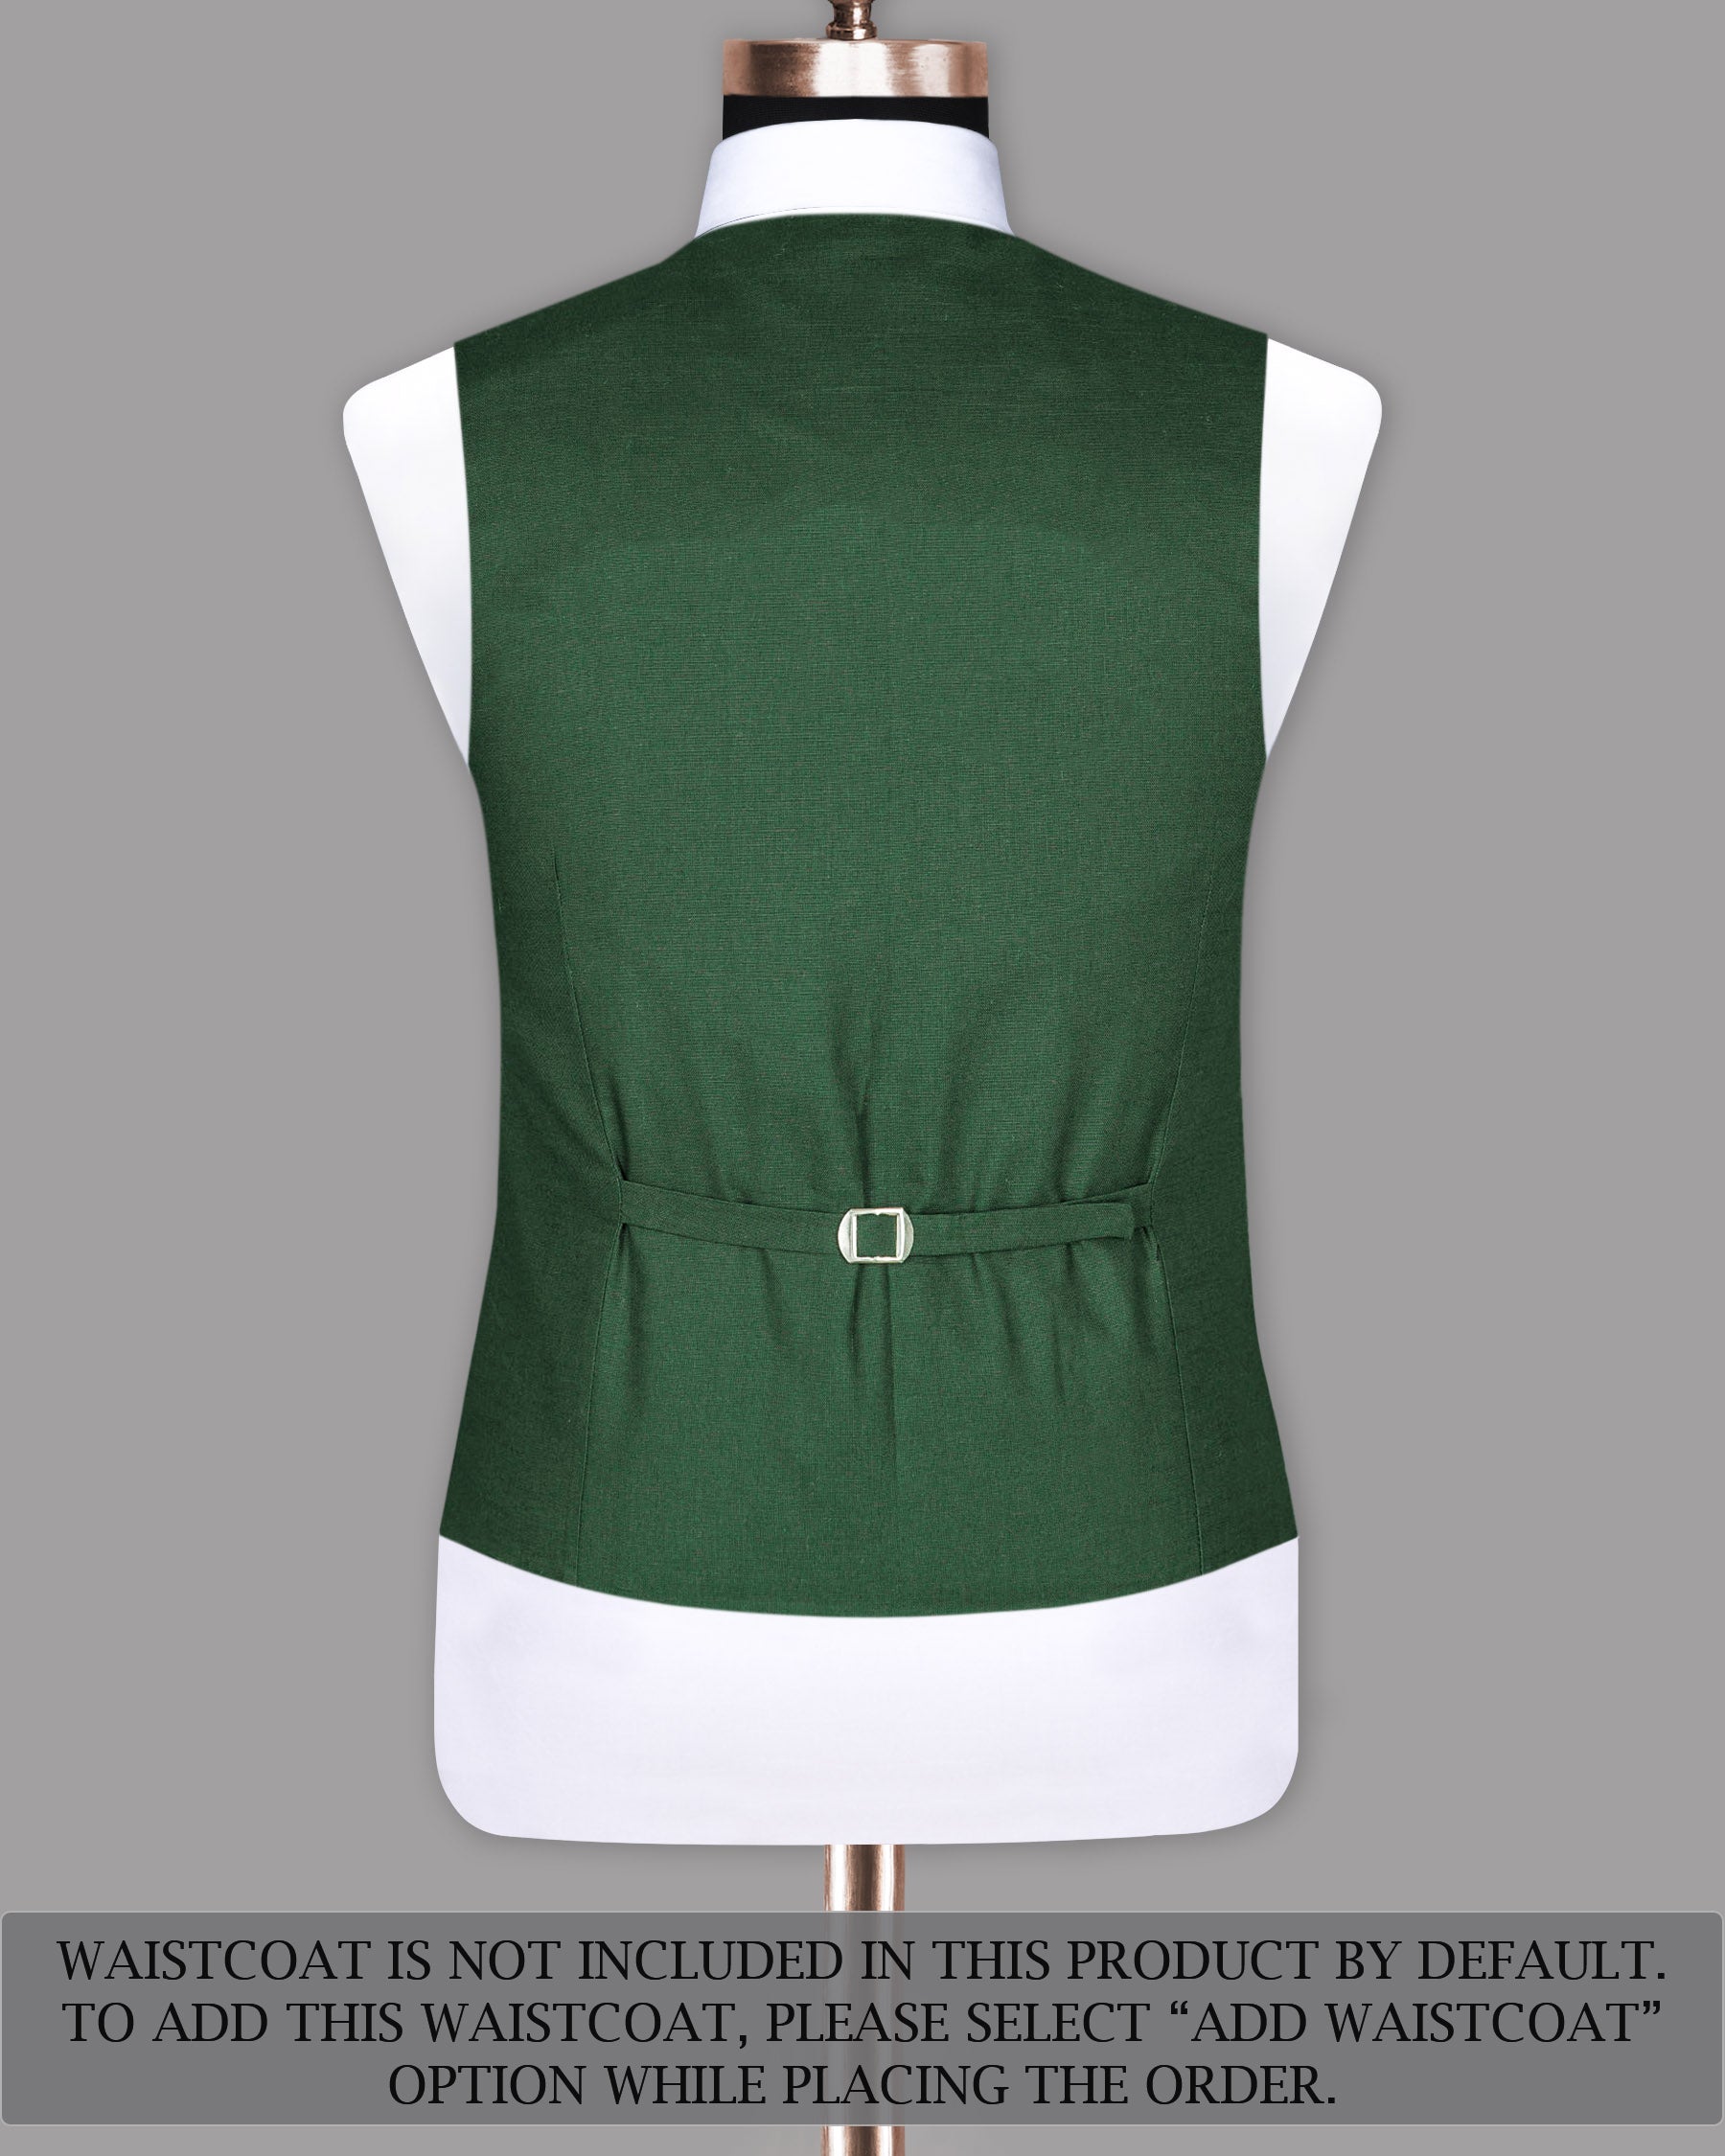 Lunar Green Luxurious Linen Sports Suit